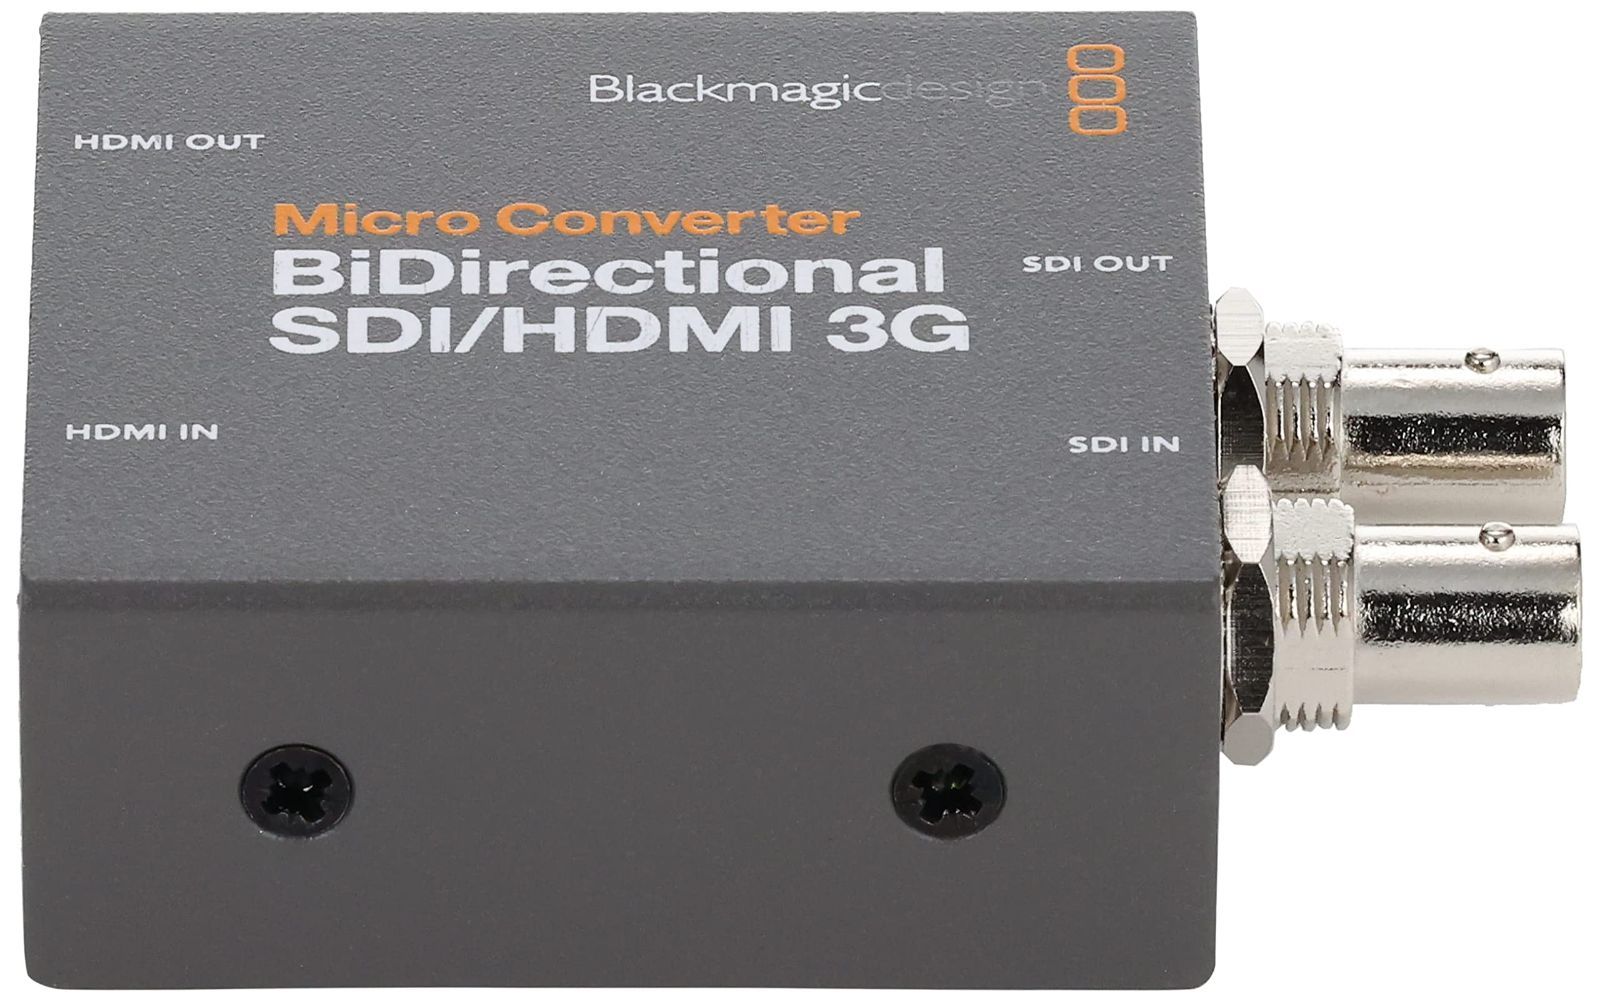 新着商品】ブラックマジックデザイン 【国内正規品】コンバーター Micro Converter BiDirect SDI/HDMI 3G PSU  Presto配送ショップ メルカリ